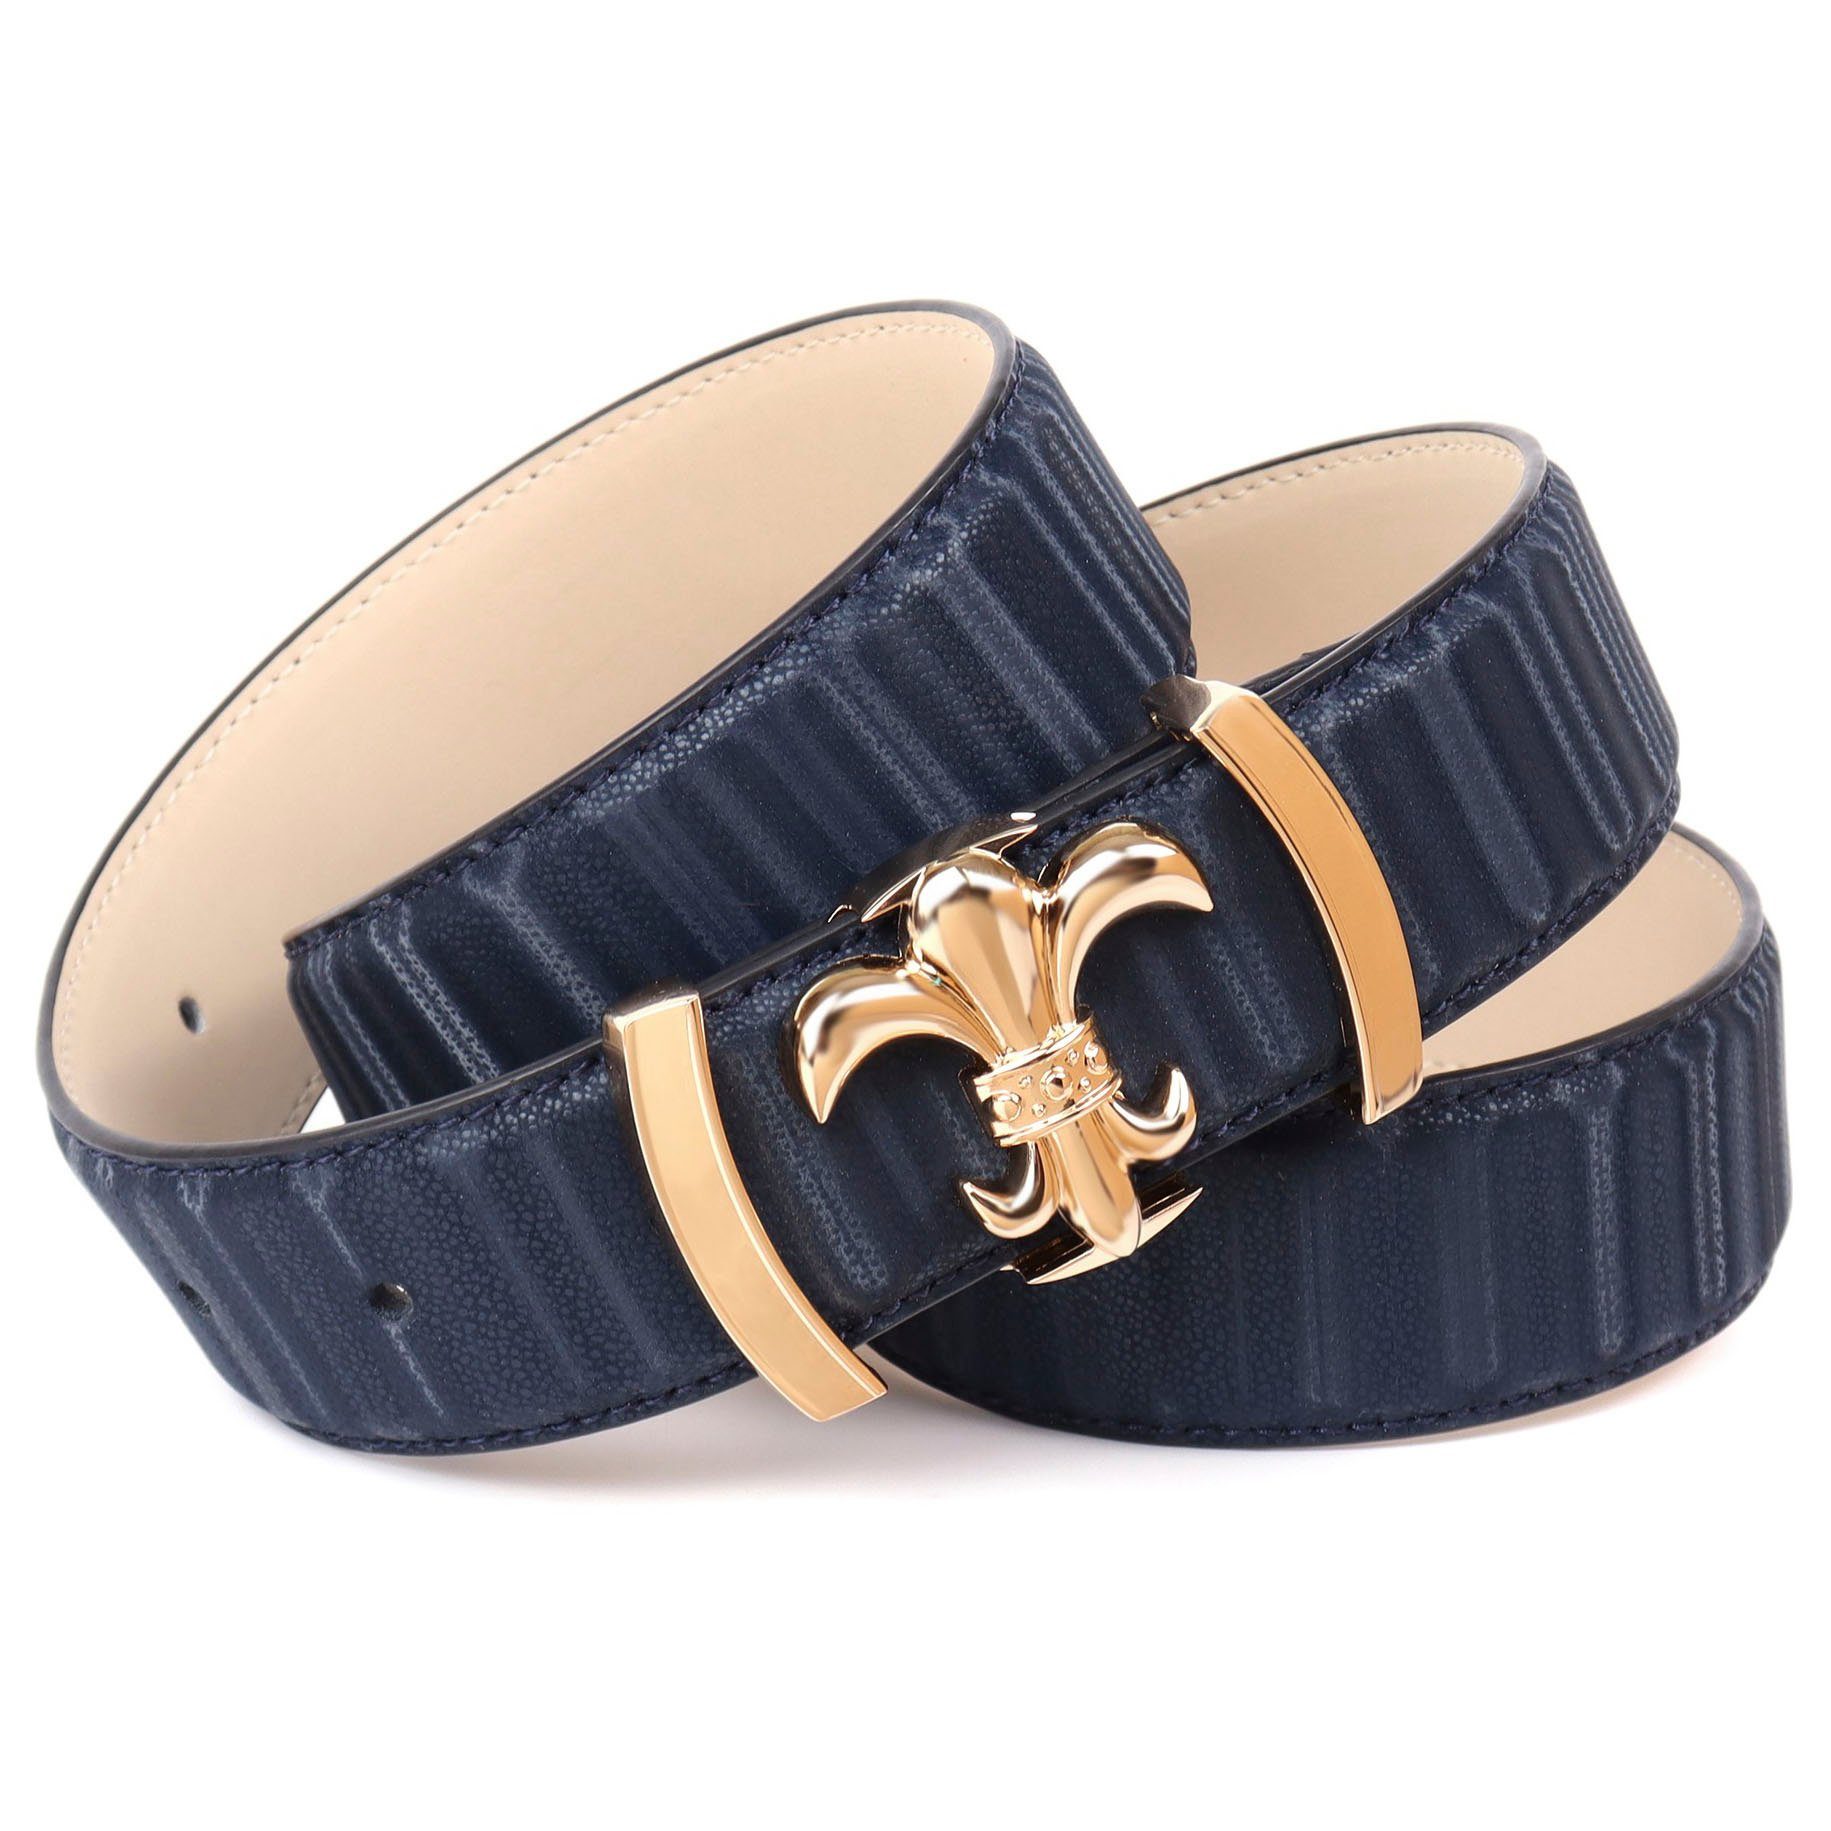 Anthoni Crown Ledergürtel filigraner dunkelblau mit Koppel-Schließe goldfarbener